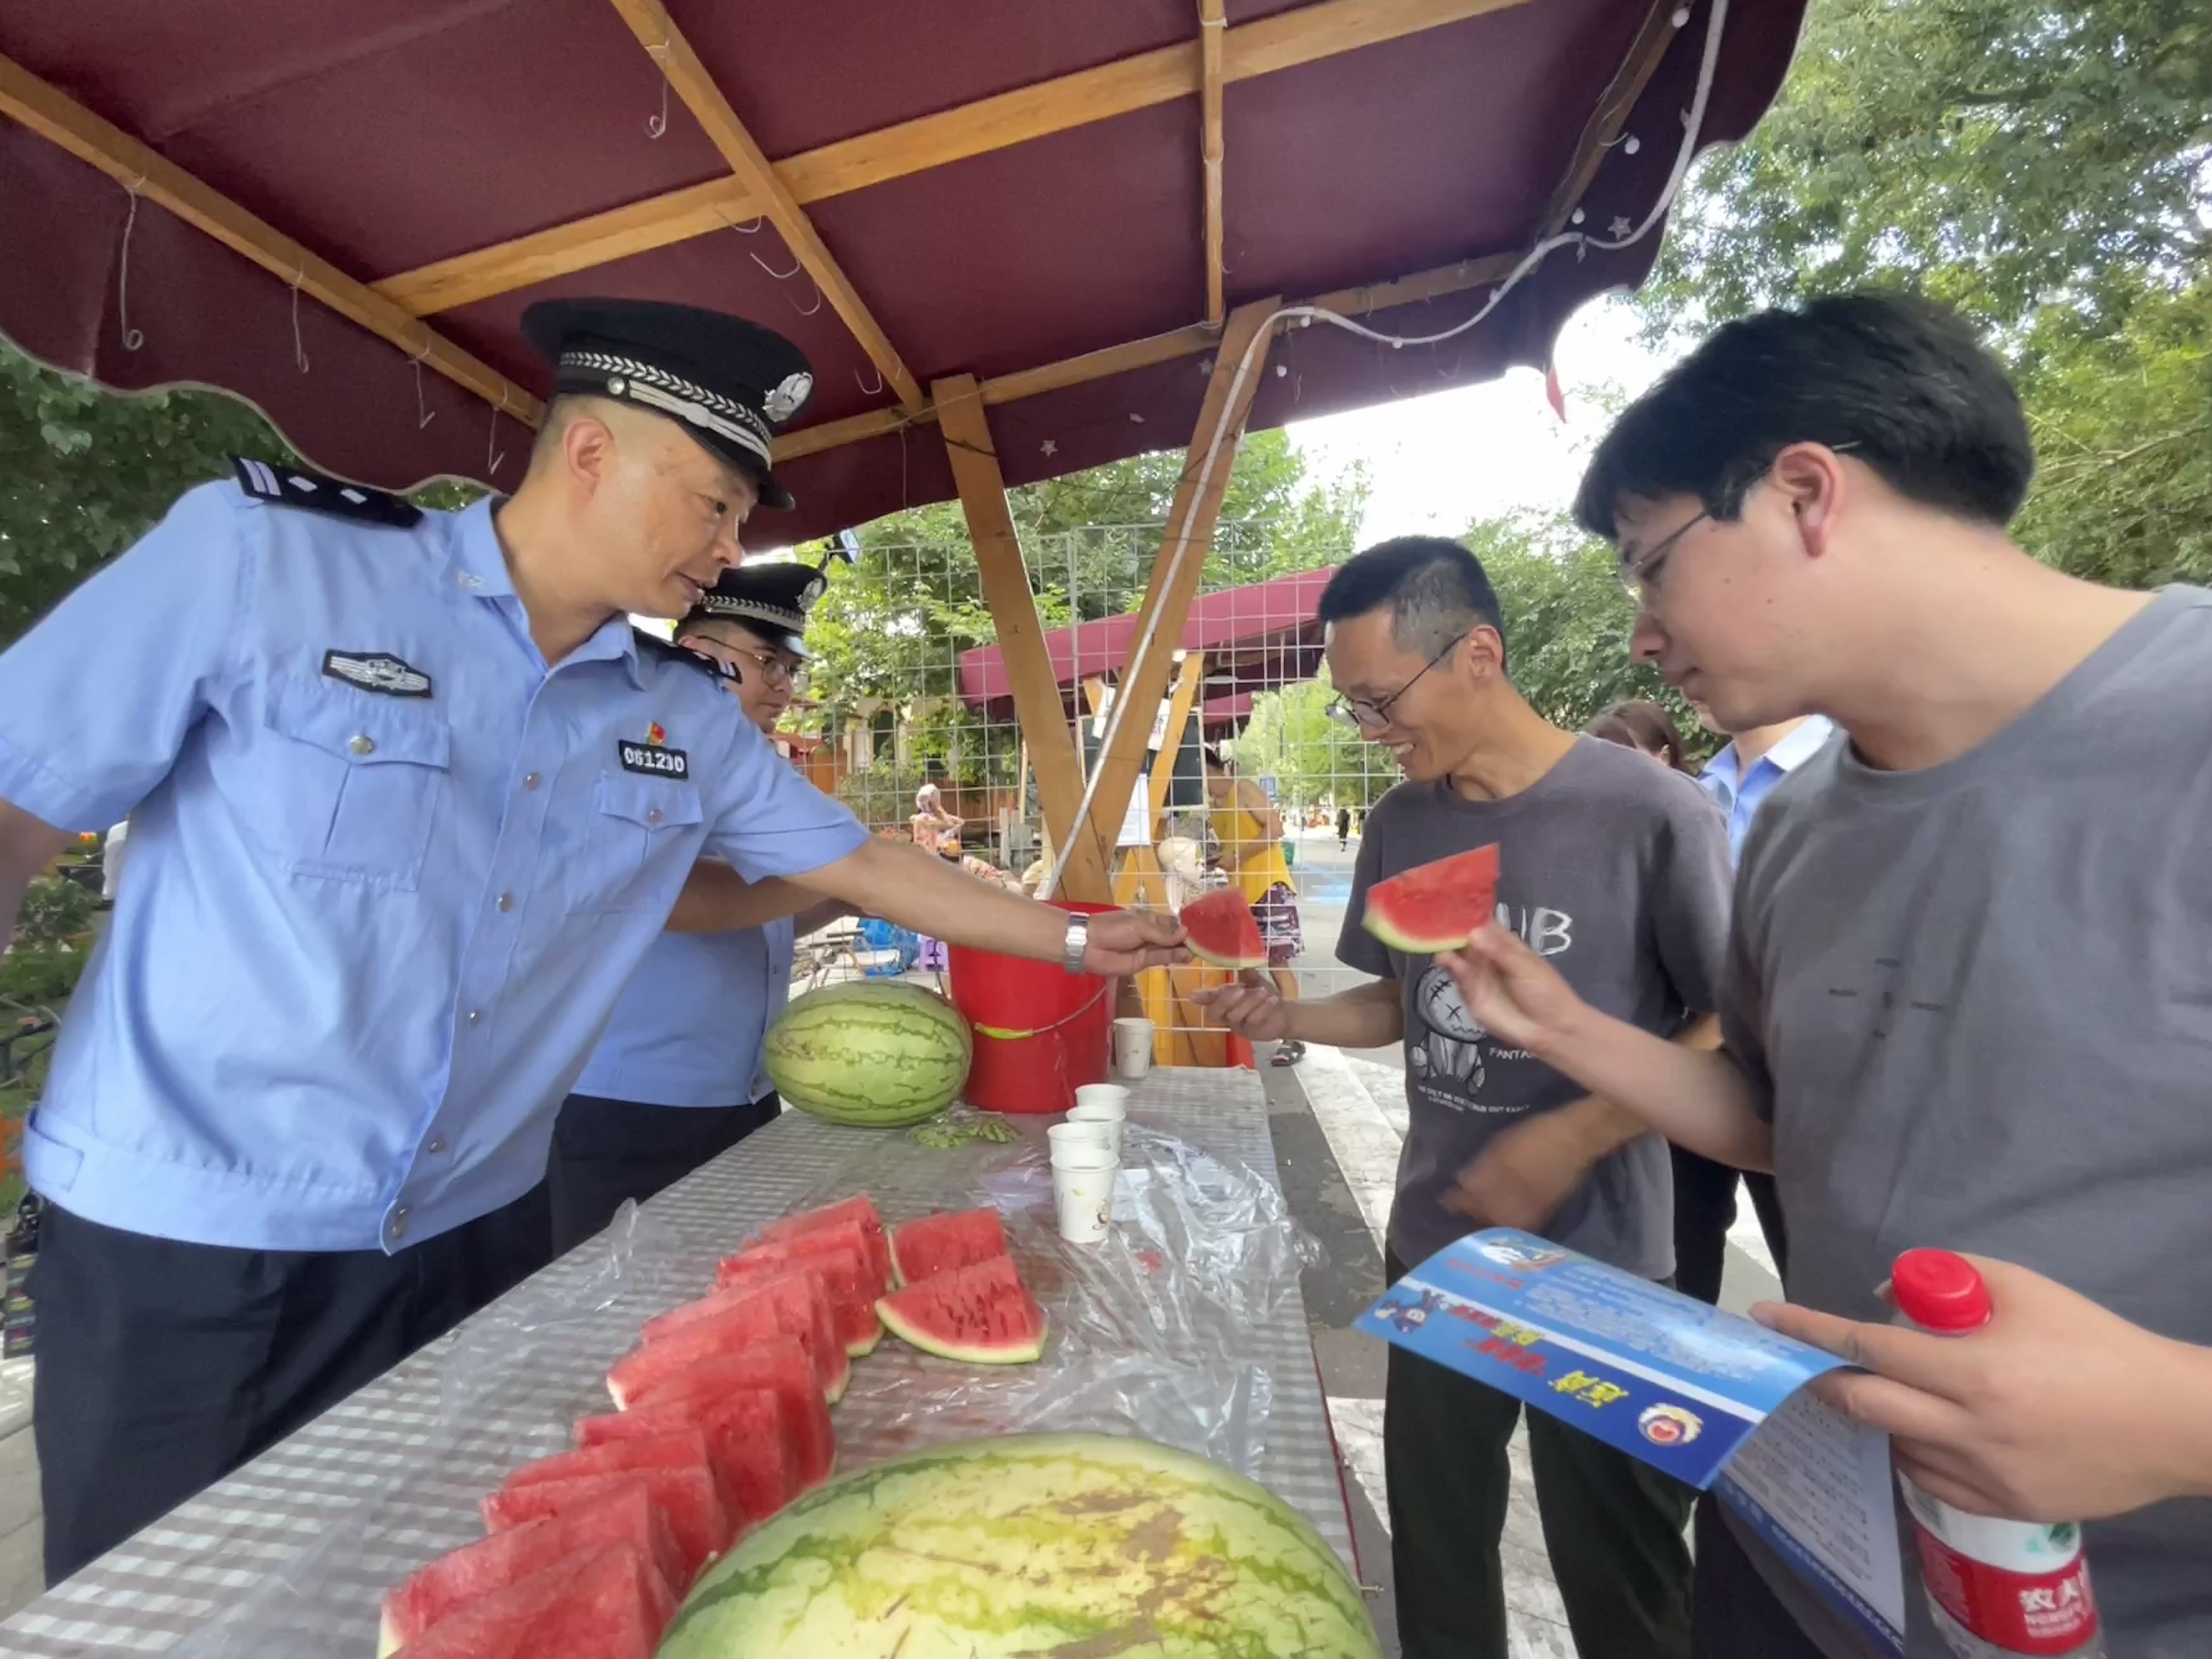 解放路派出所民警向六星街游客进行普法宣传工作并送去解暑的西瓜、绿豆汤。2.jpg